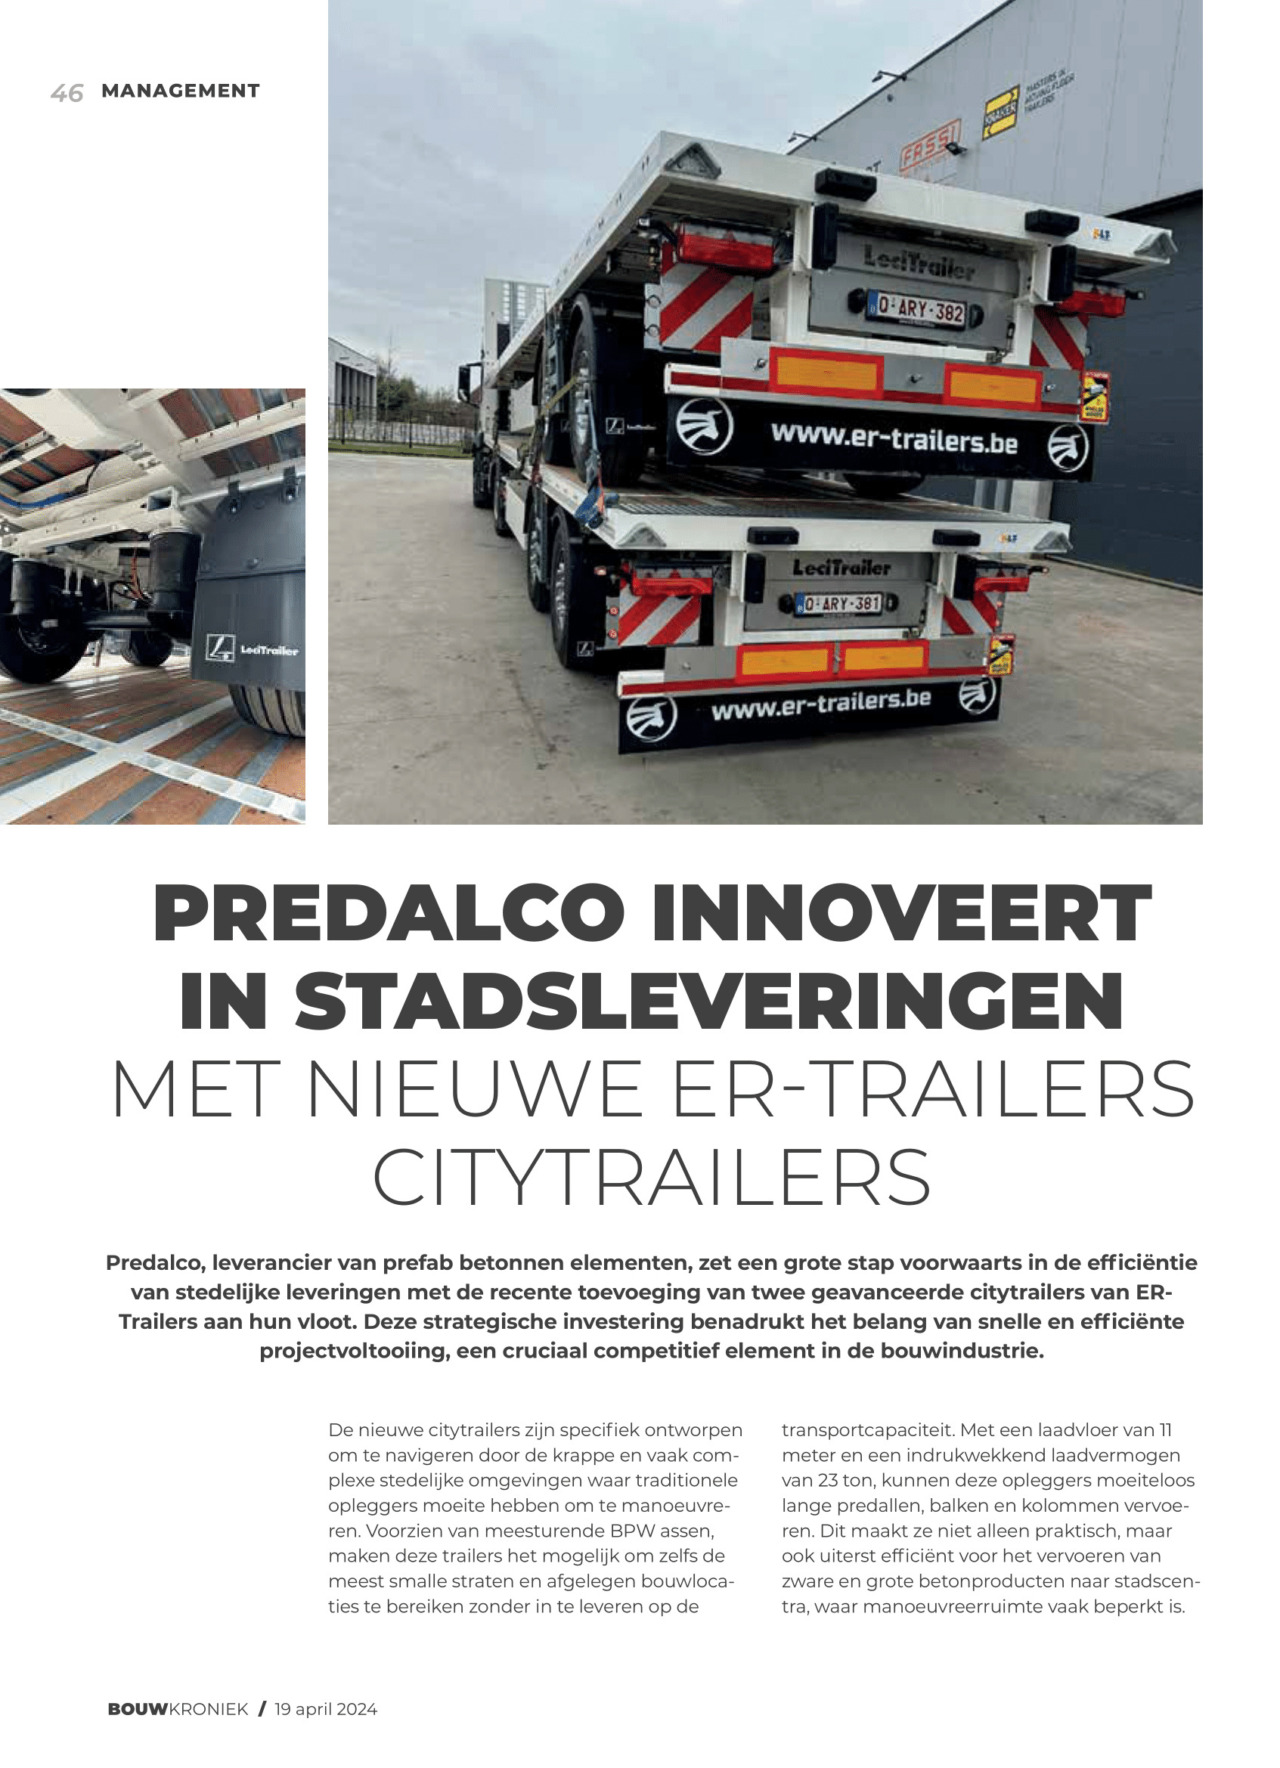 Predalco Investeert In Stadsleveringen